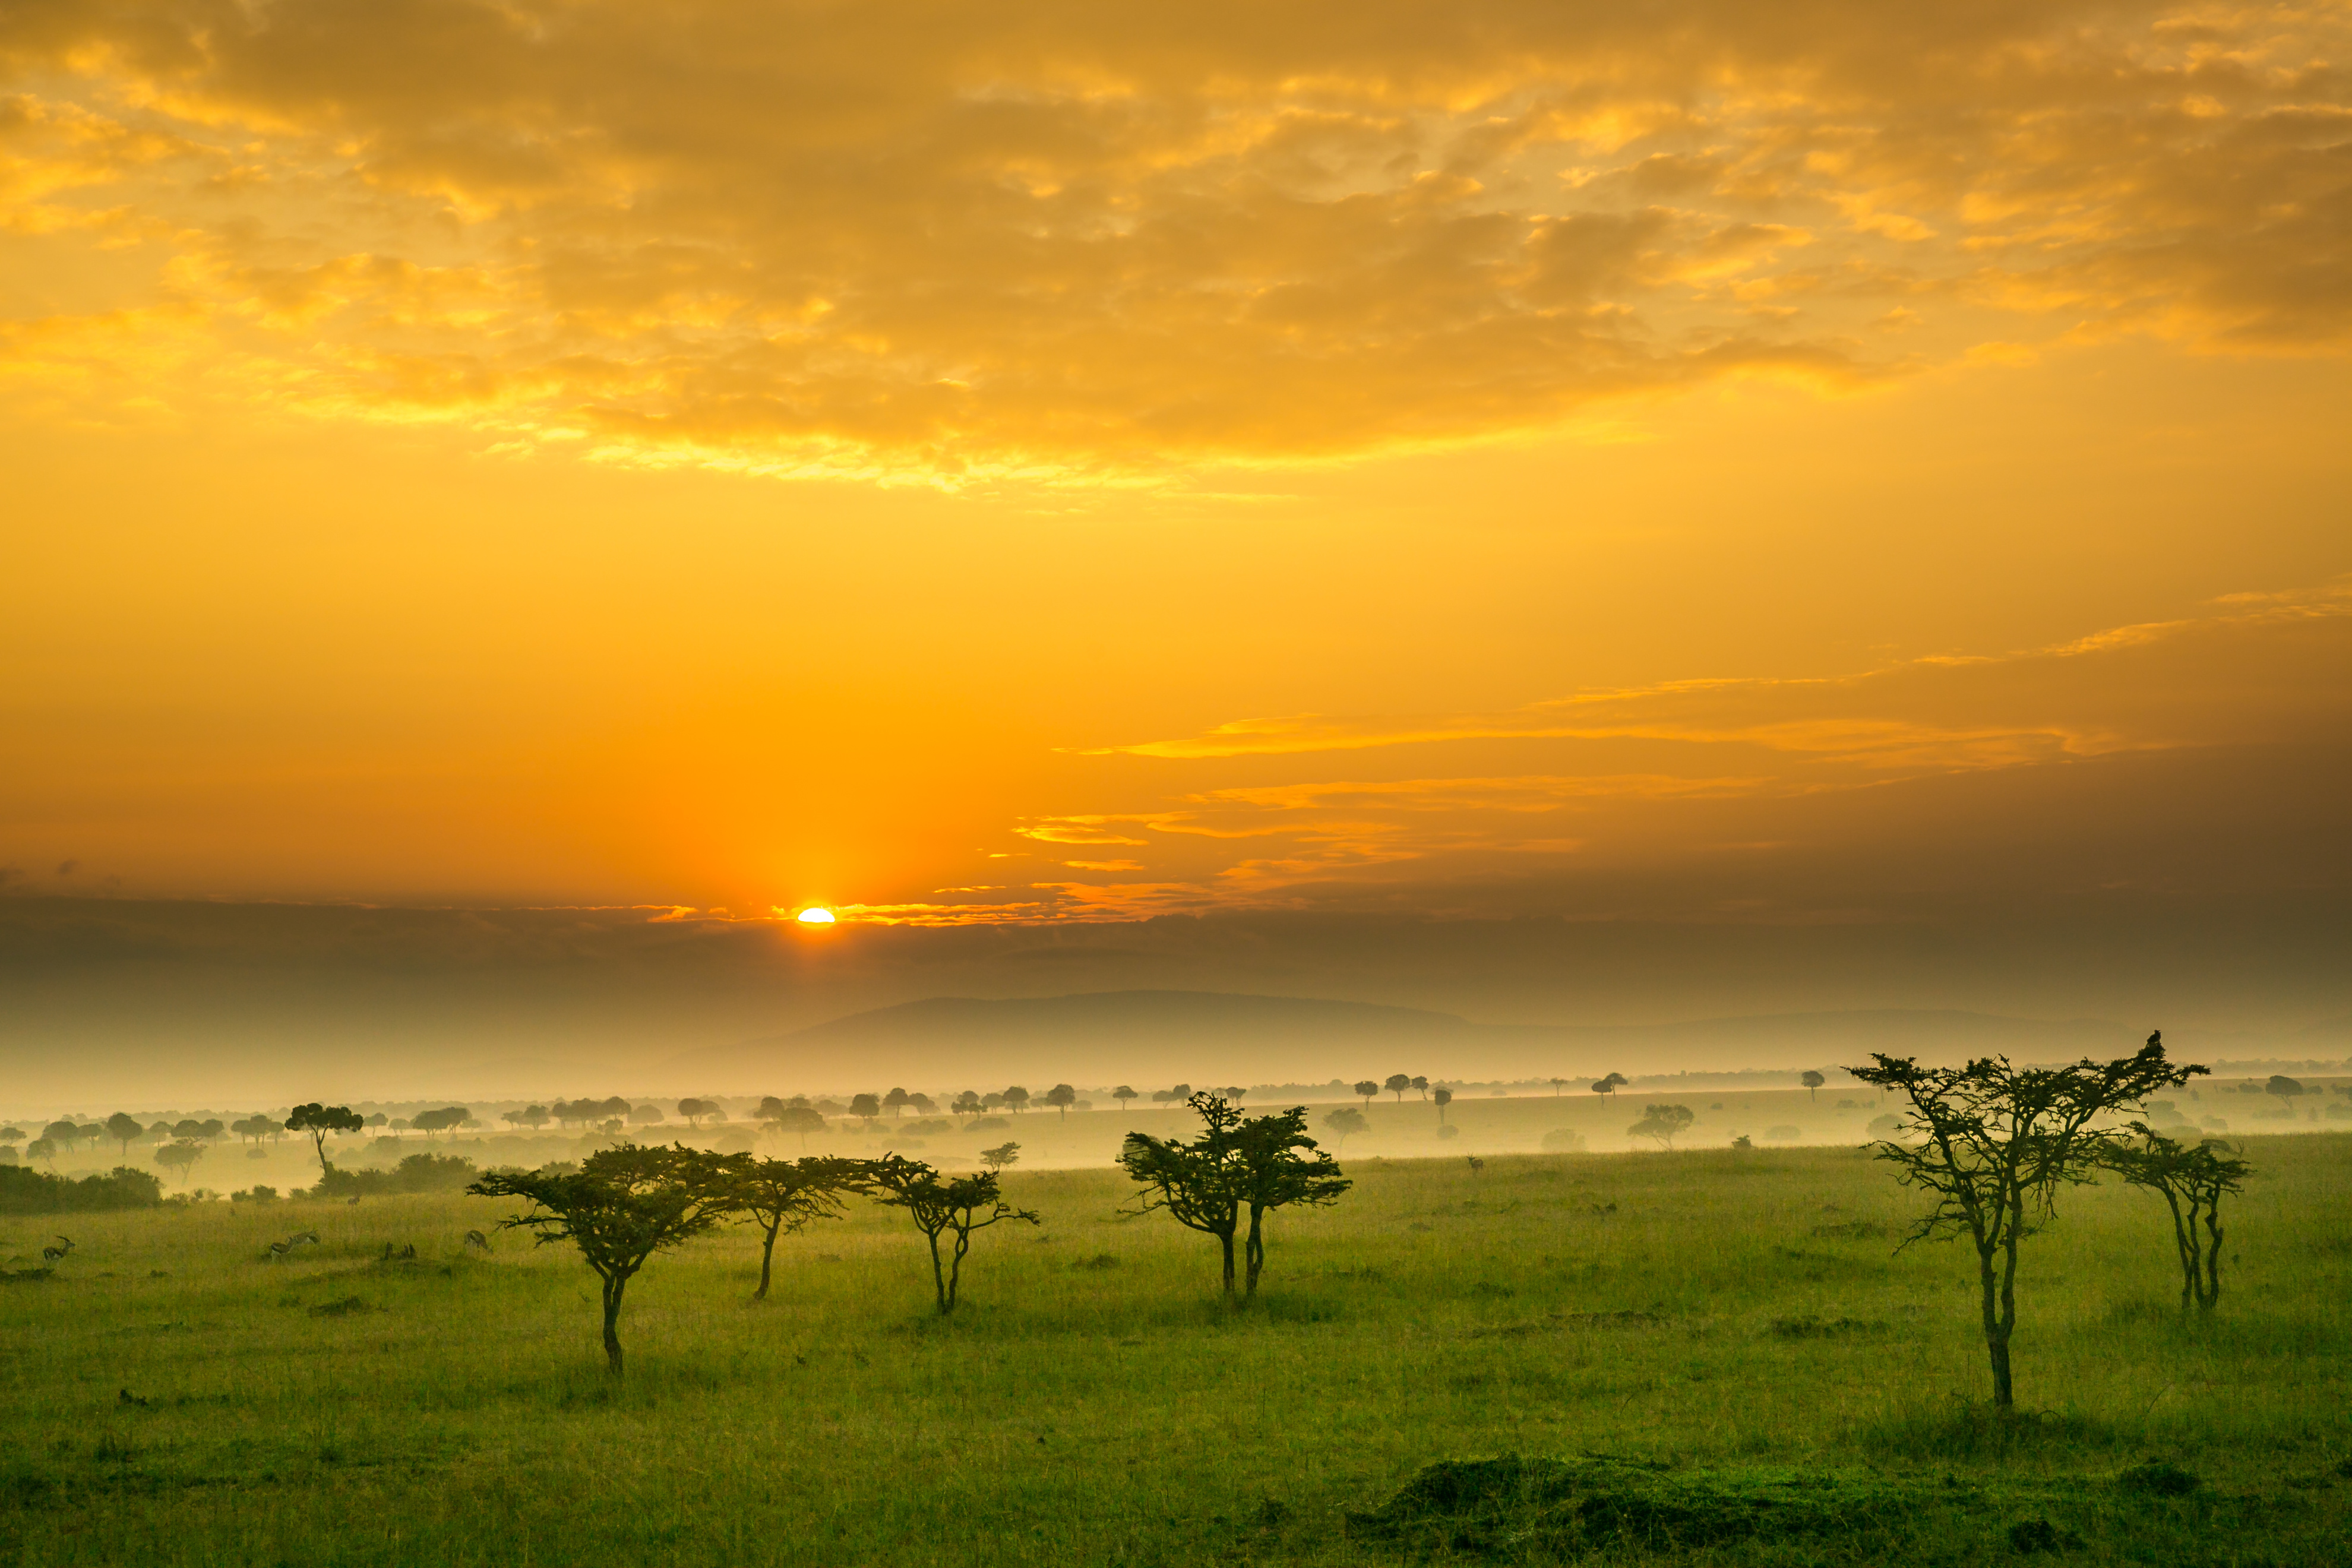 acacia-trees-and-spring-green-grass-at-sunrise-on-the-maasai-mara-savannah-kenya-africa_417478128.jpeg